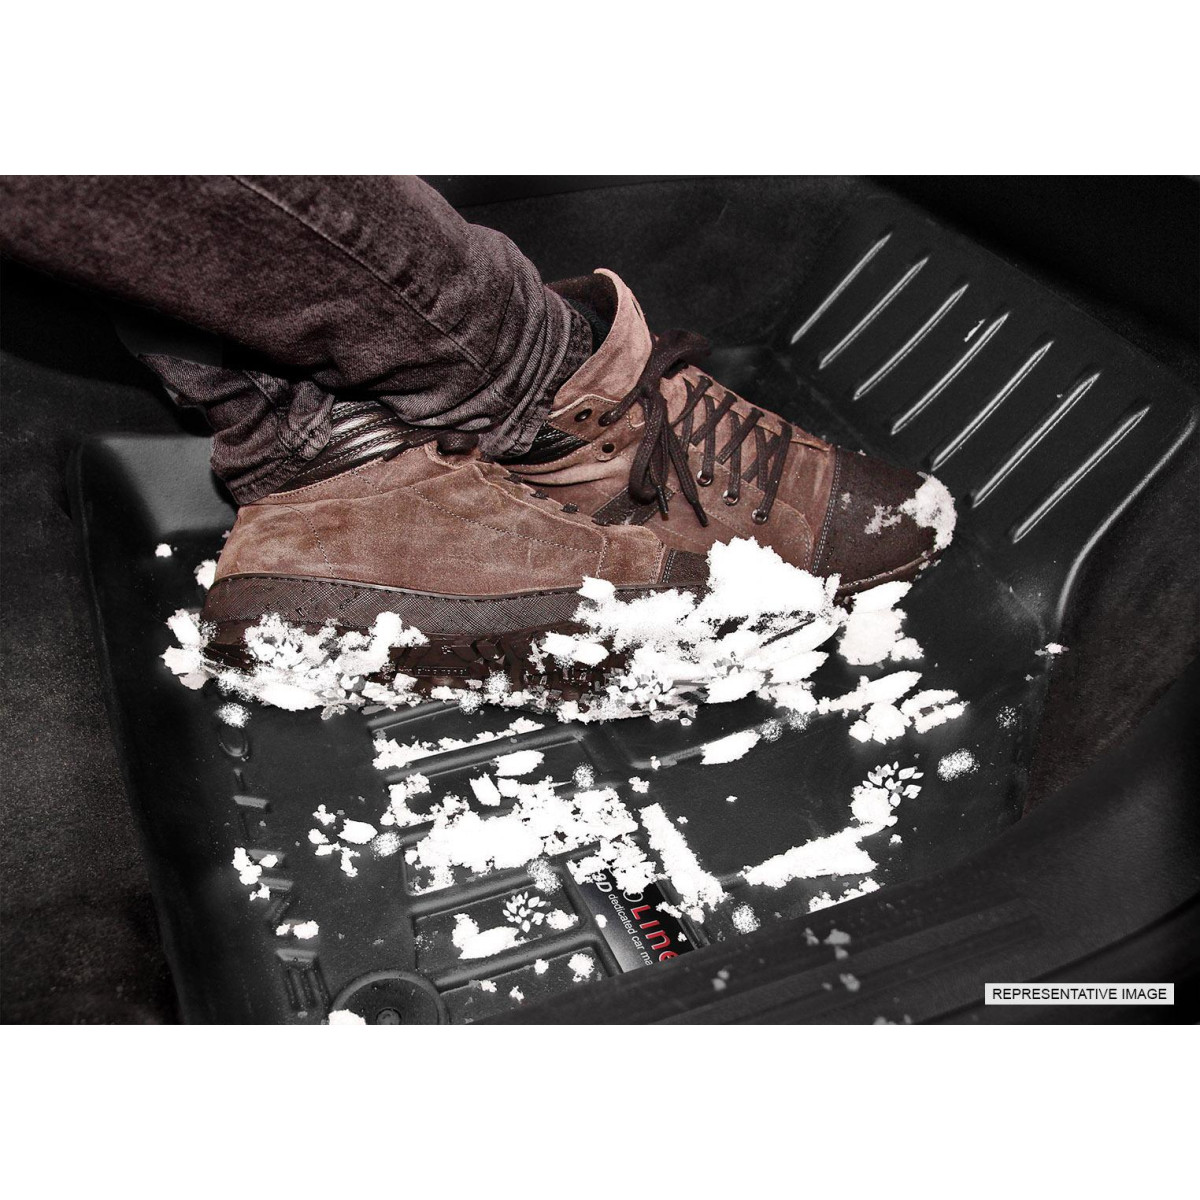 Guminiai kilimėliai Proline Mercedes Benz Vito (w447) nuo 2014m. / paaukštintais kraštais